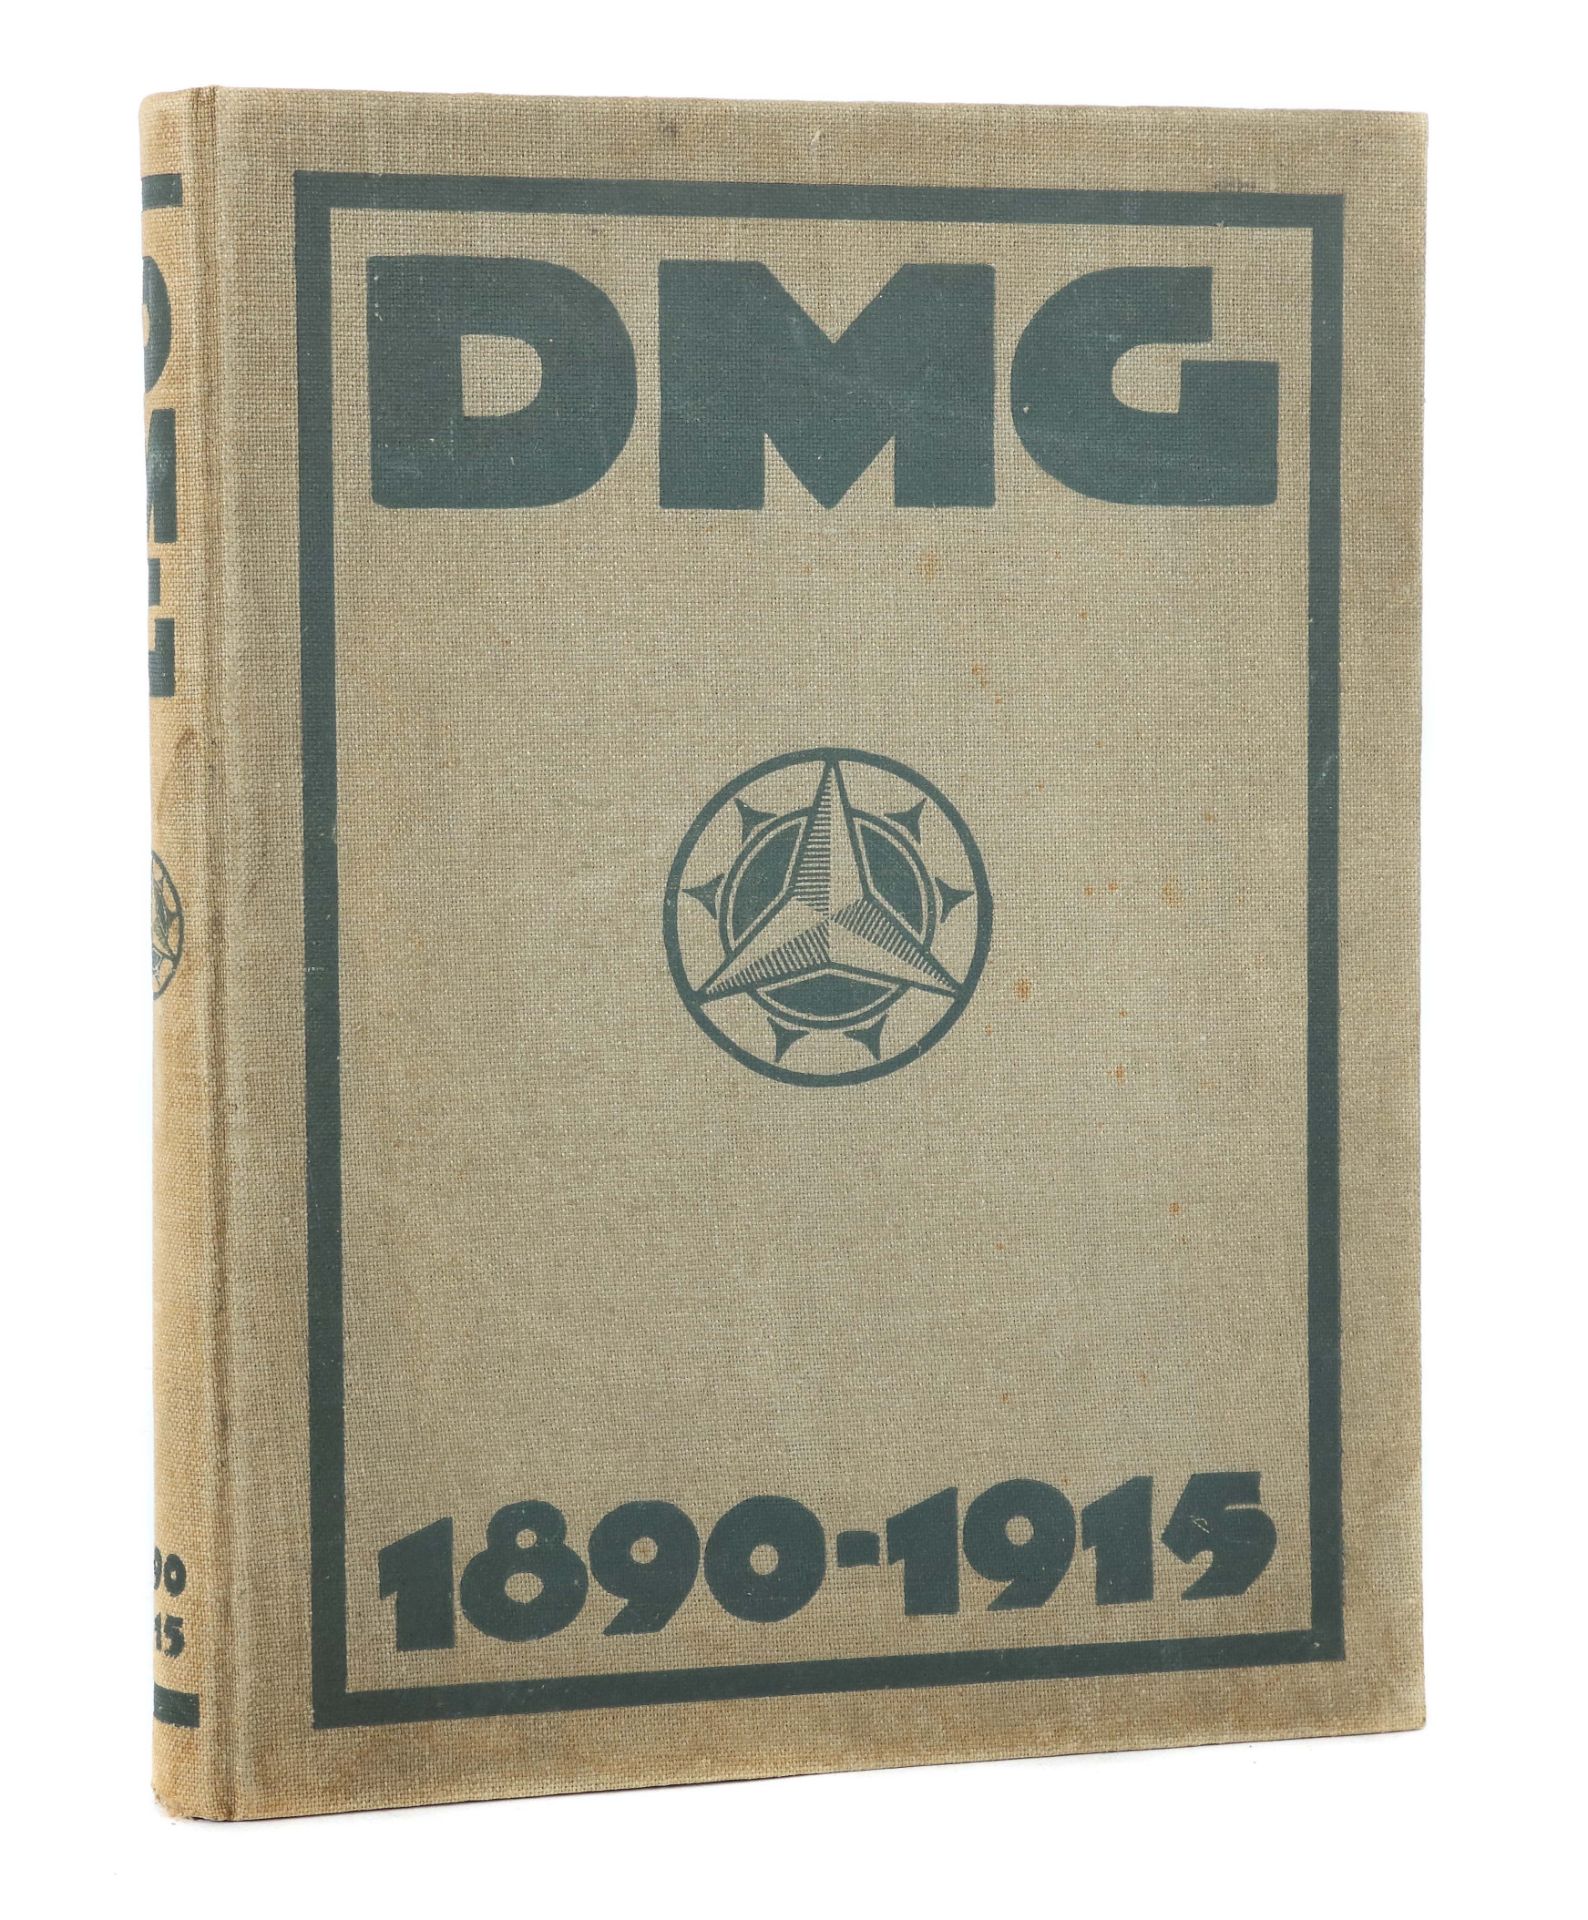 DMG 1890 - 1915 Zum 25-jährigen